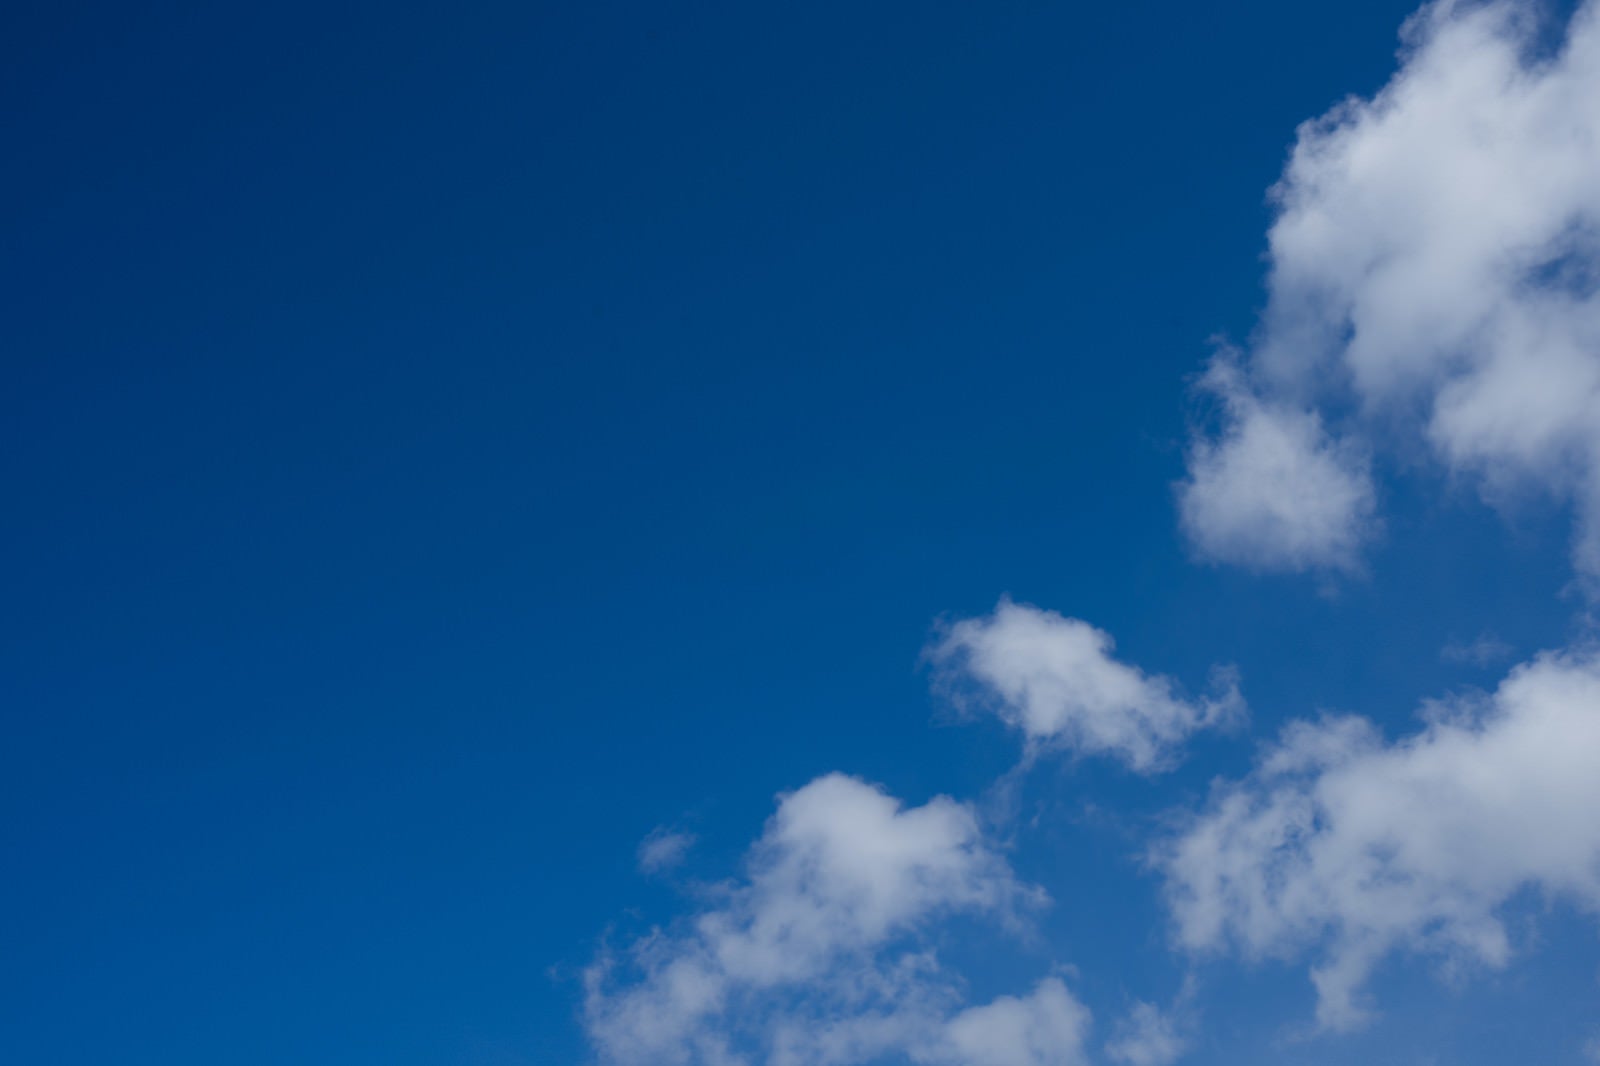 「青空と浮かぶまばらな雲」の写真